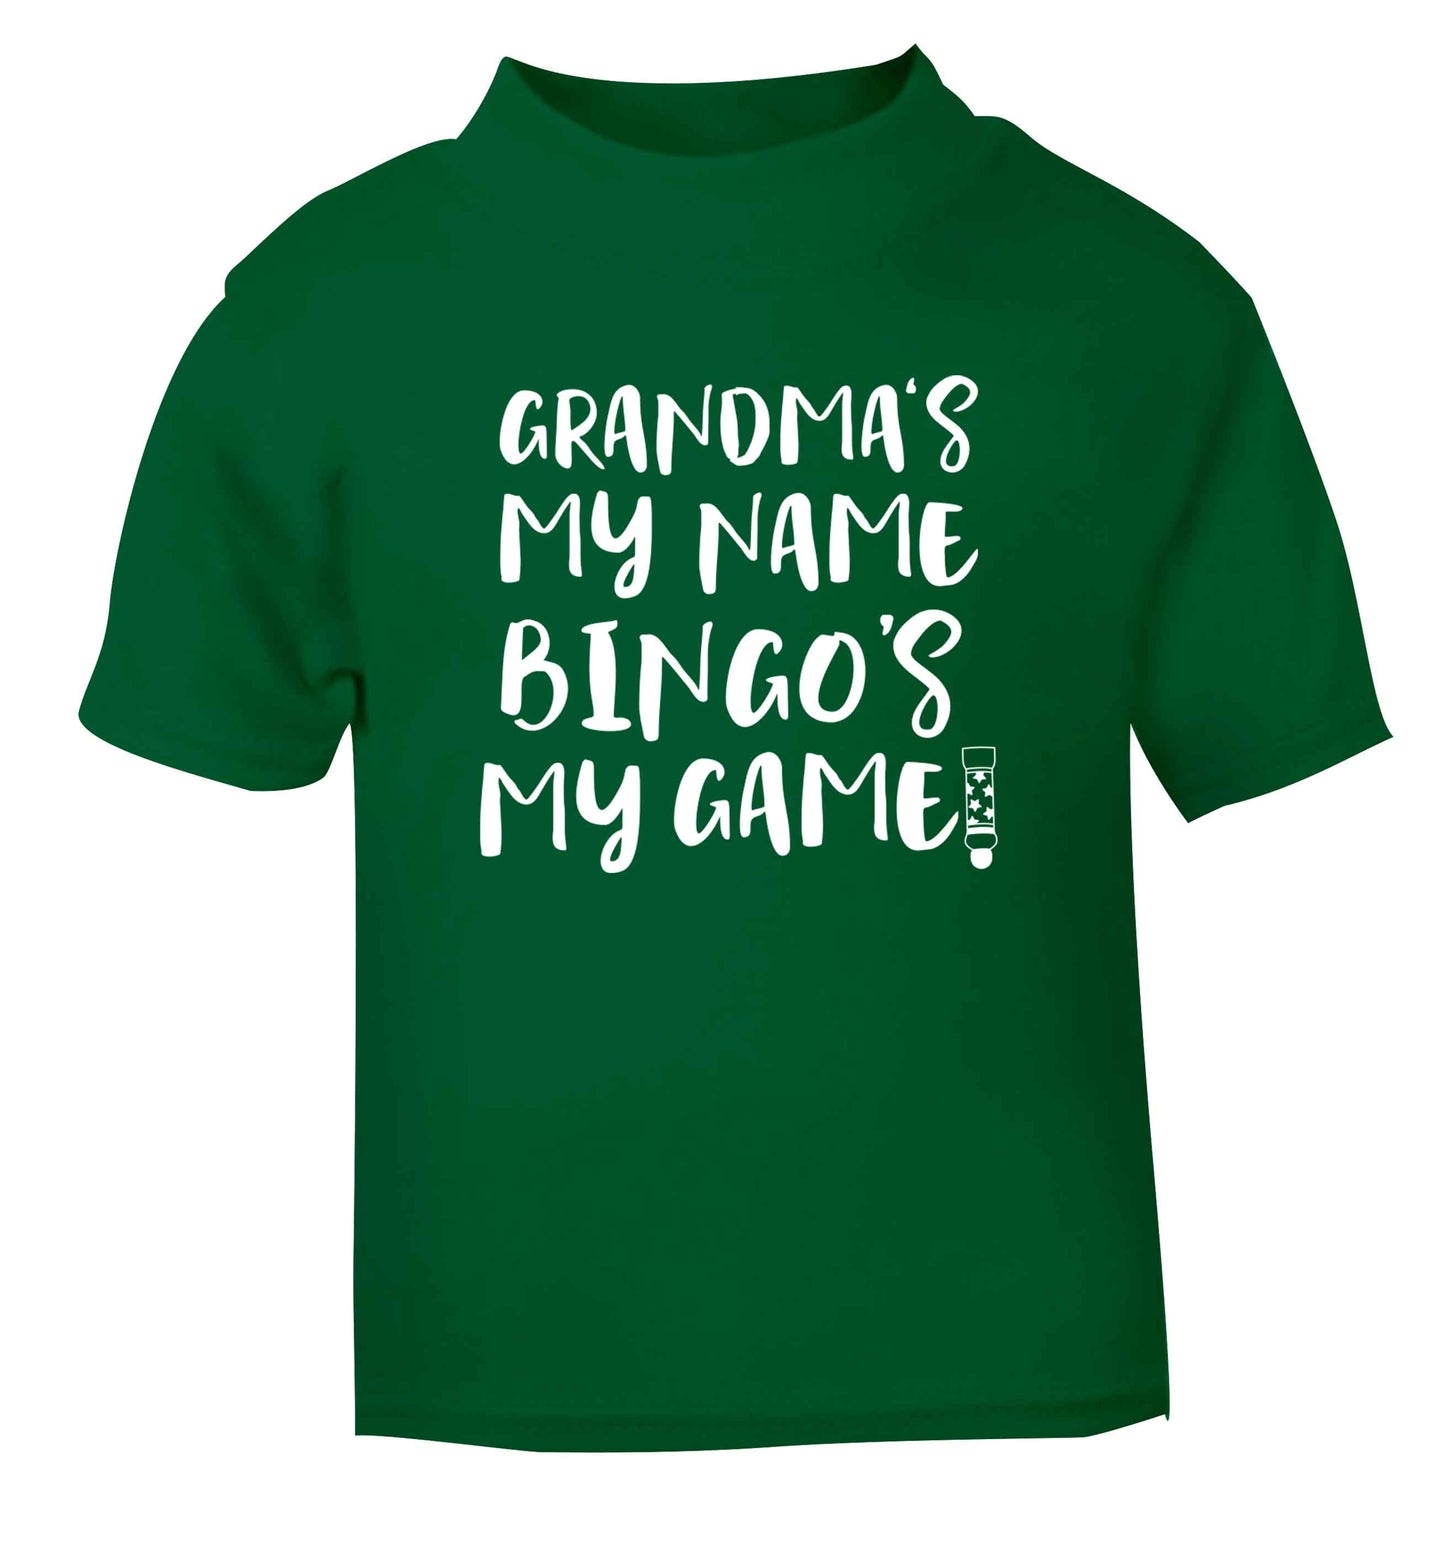 Grandma's my name bingo's my game! green Baby Toddler Tshirt 2 Years